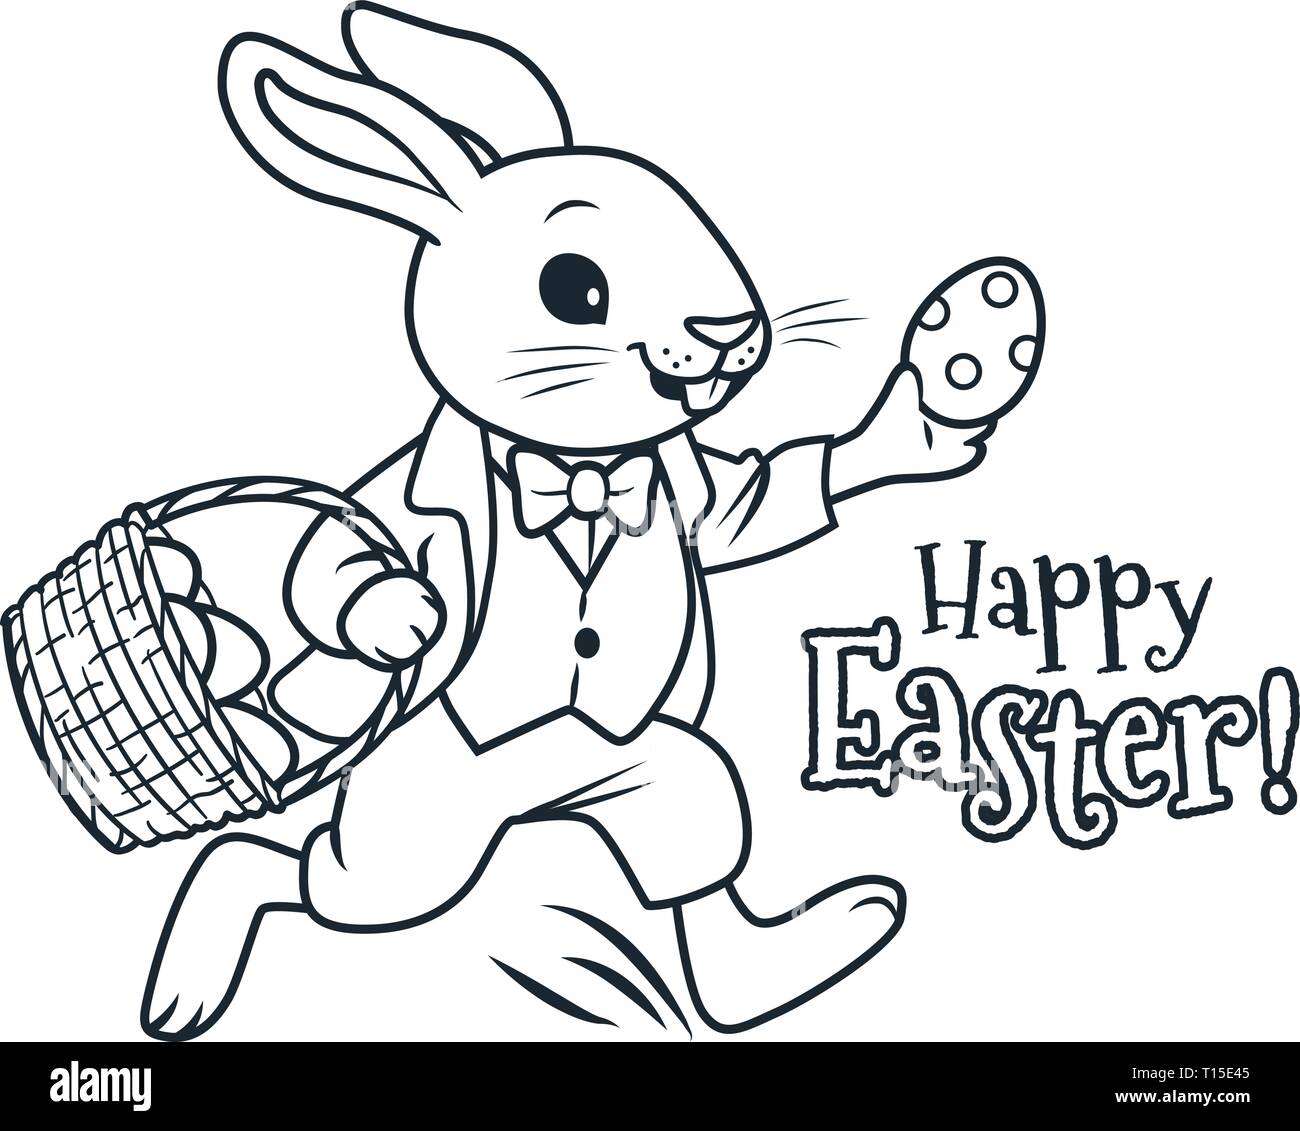 Conejito de Pascua con canasta llena de huevos de chocolate para colorear  la ilustración vectorial página de dibujos animados. La primavera, la Pascua,  el huevo hunt, la actividad del partido infantiles Imagen